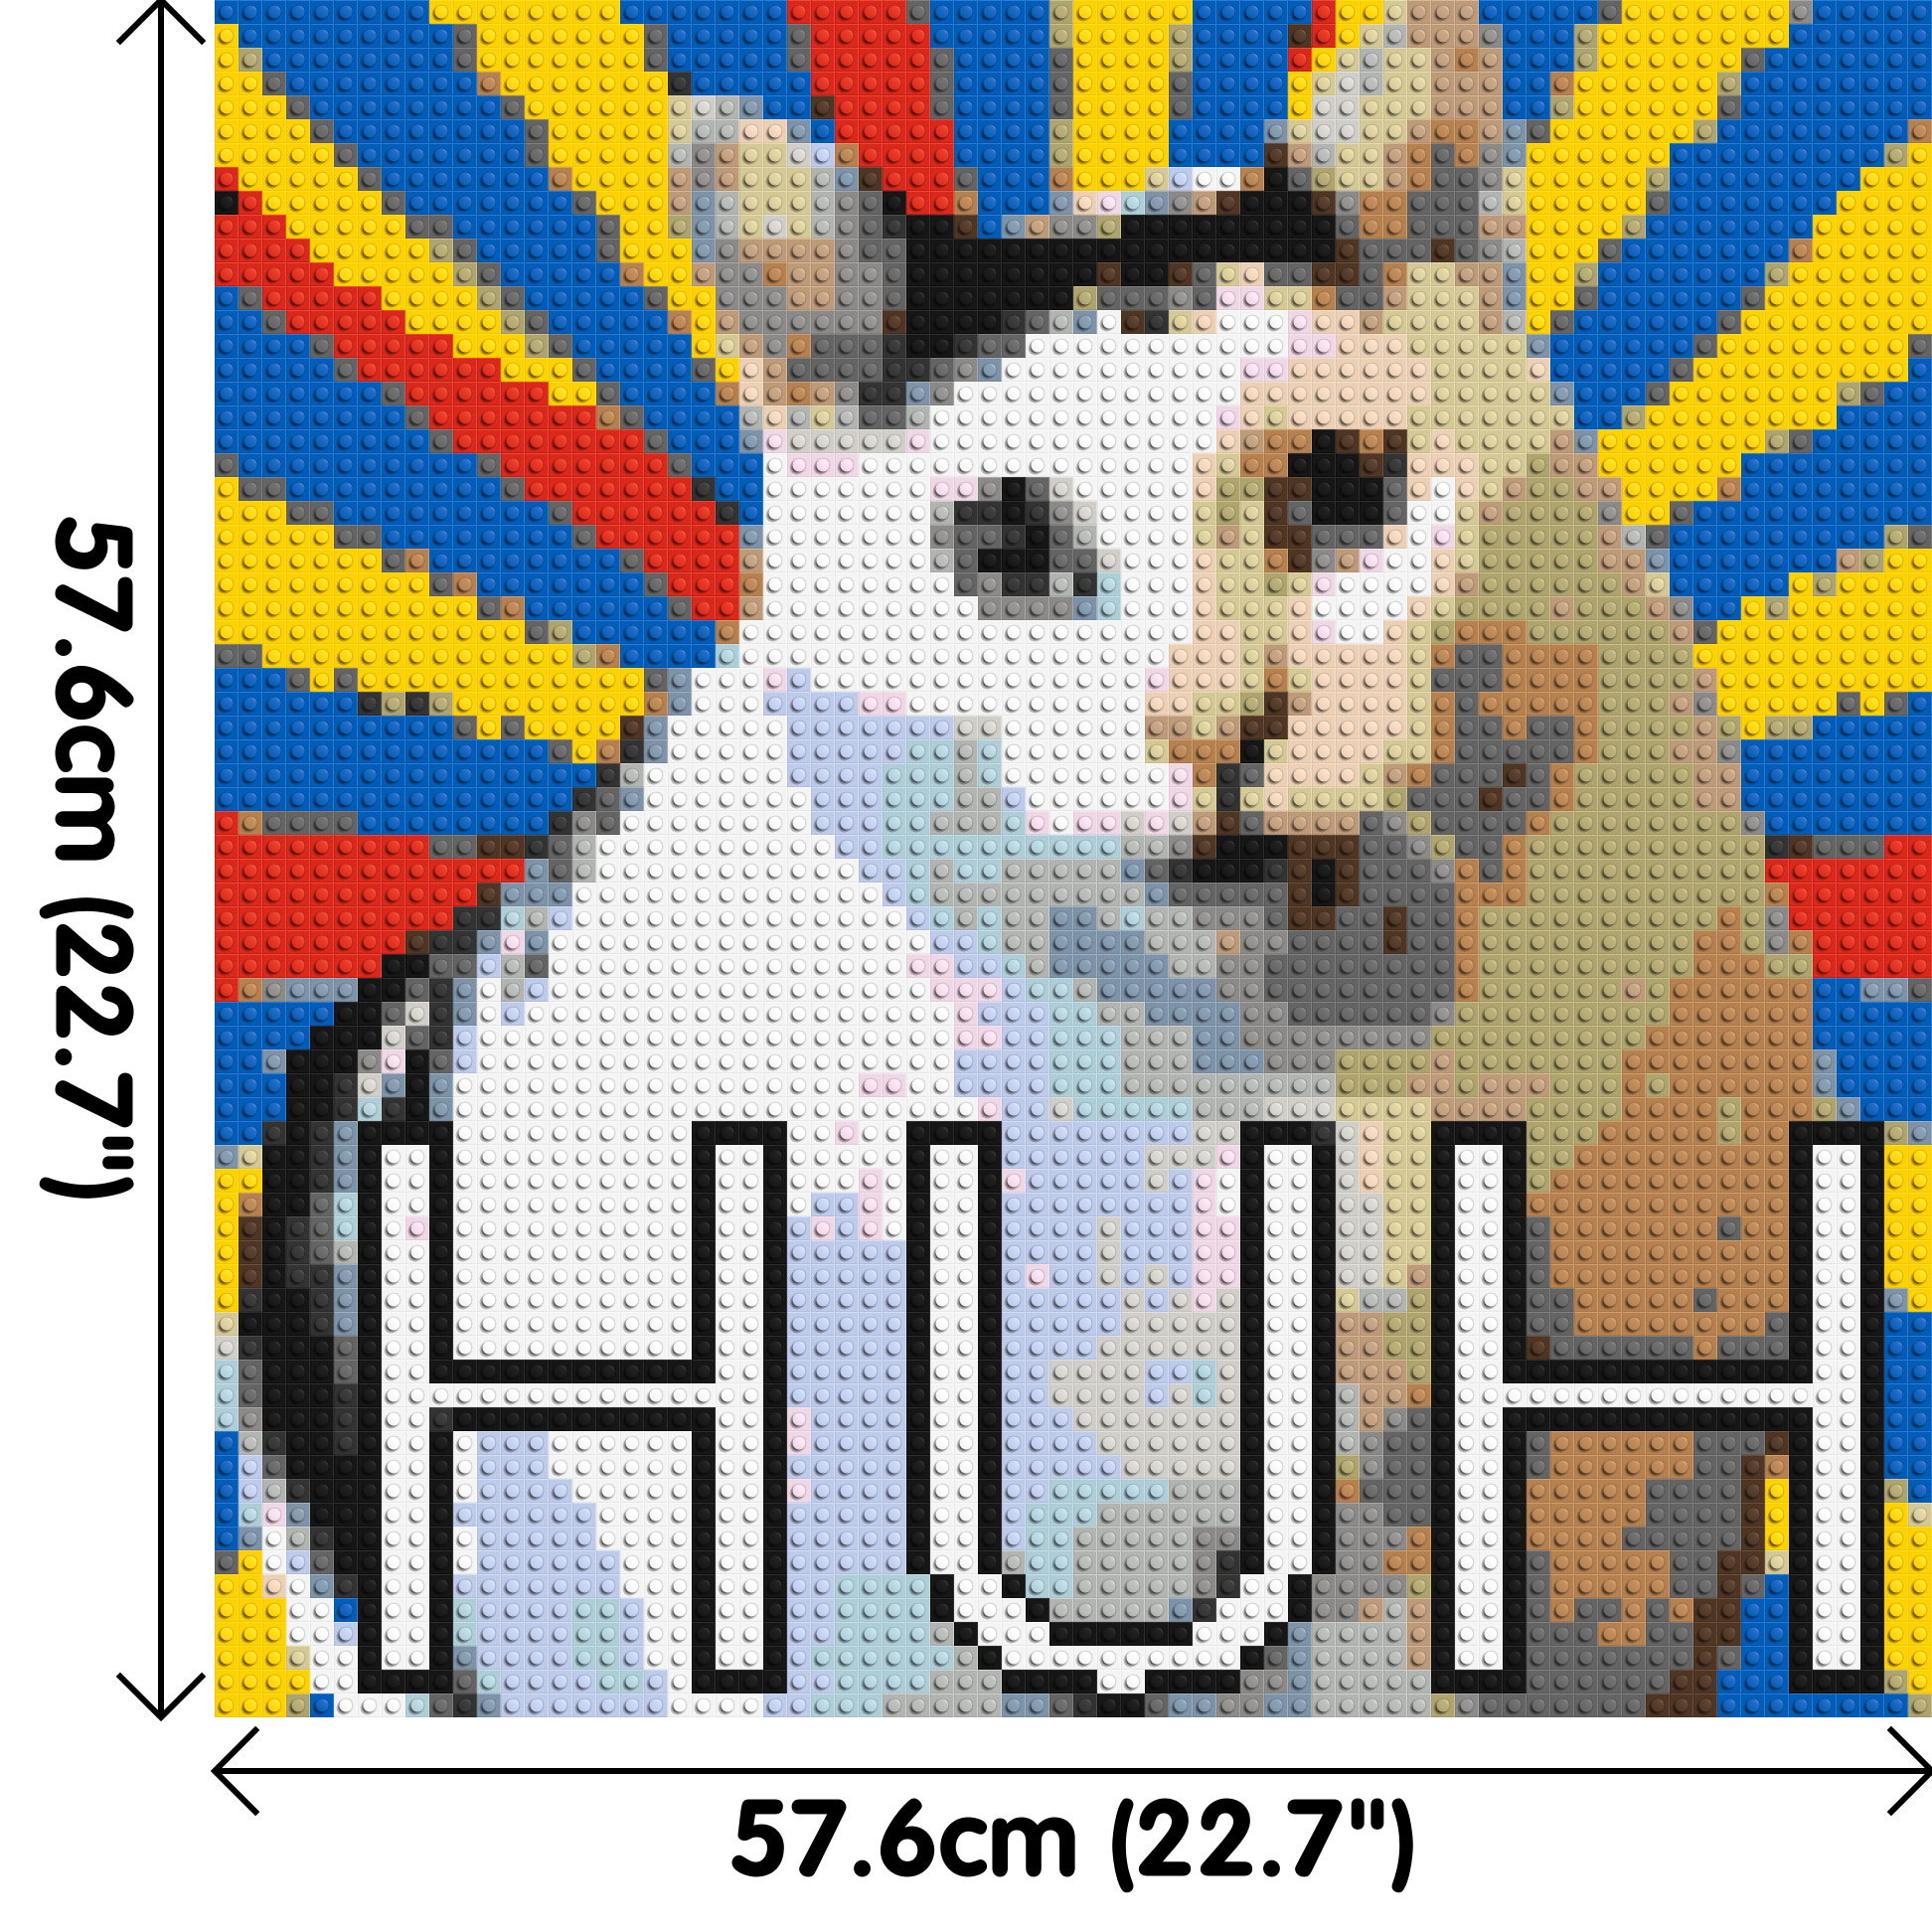 Huh Cat Meme - Brick Art Mosaic Kit 3x3 dimensions